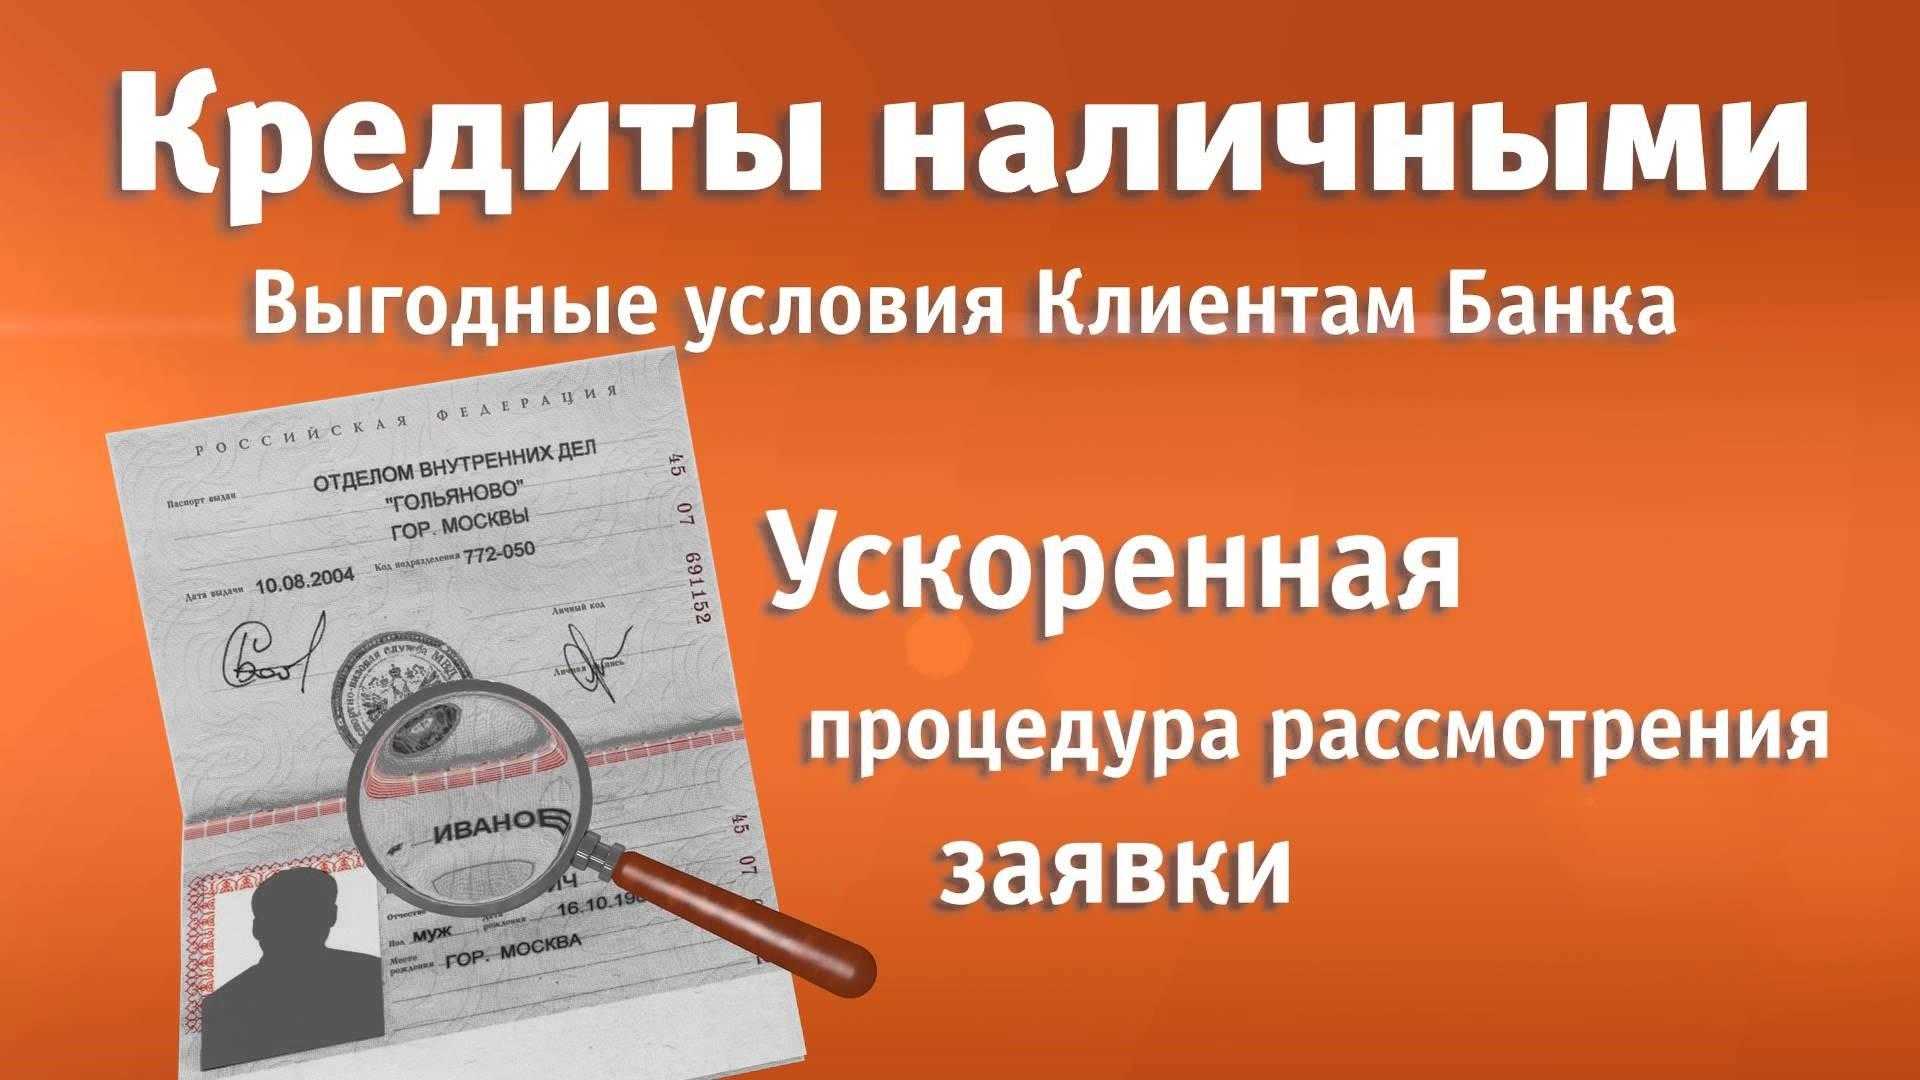 взять кредит наличными без справок и поручителей в москве по паспорту для жителей